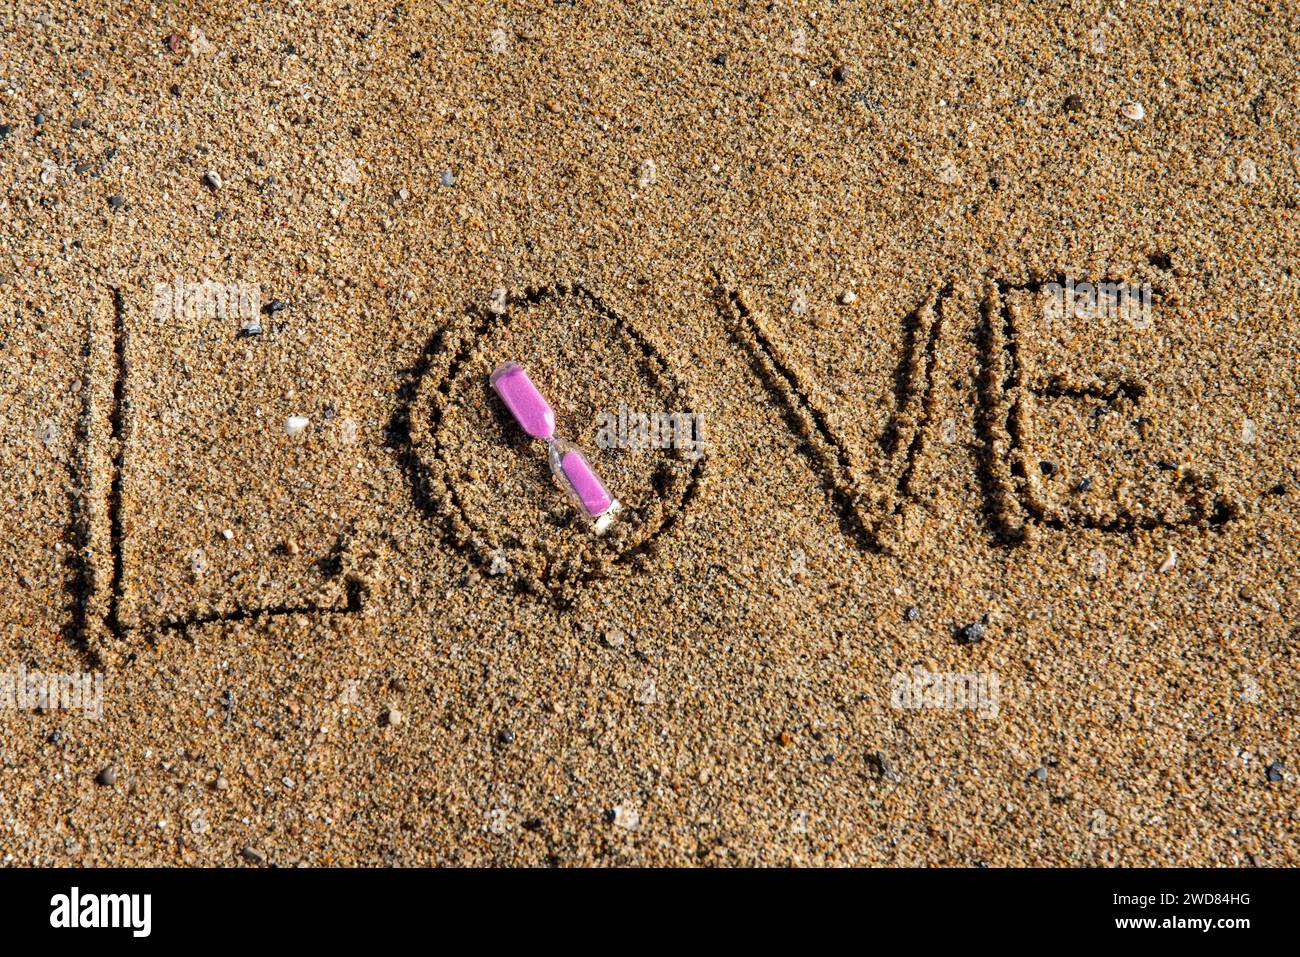 Zeitlose Liebe: „Liebe“ am Strand in einer rosafarbenen Sanduhr, wo Romantik auf den Sand ewiger Momente trifft Stockfoto